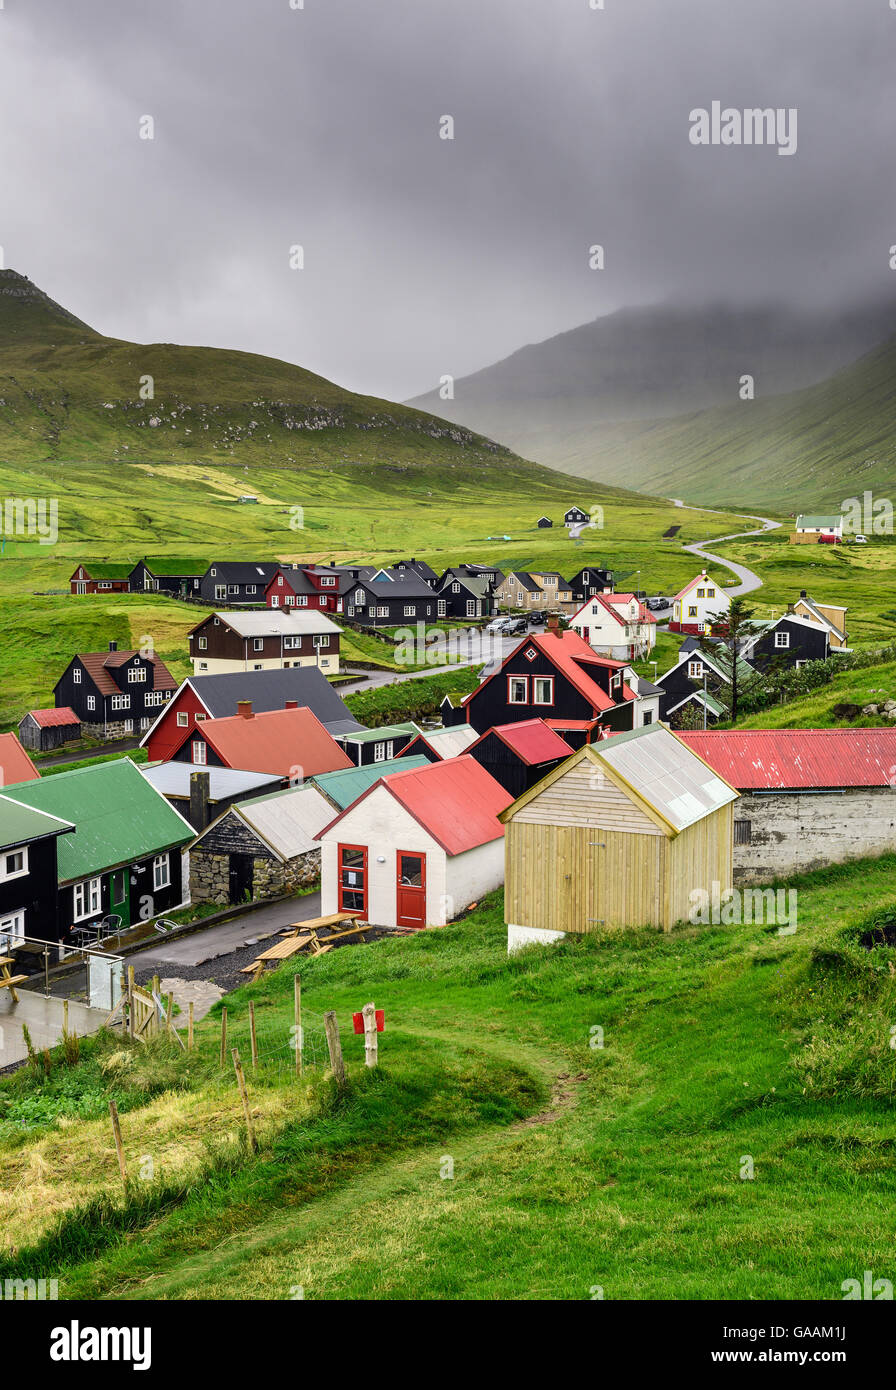 Malerischen Dorf Gjogv mit typisch bunten Häusern auf der Insel Eysturoy, Färöer, Dänemark Stockfoto